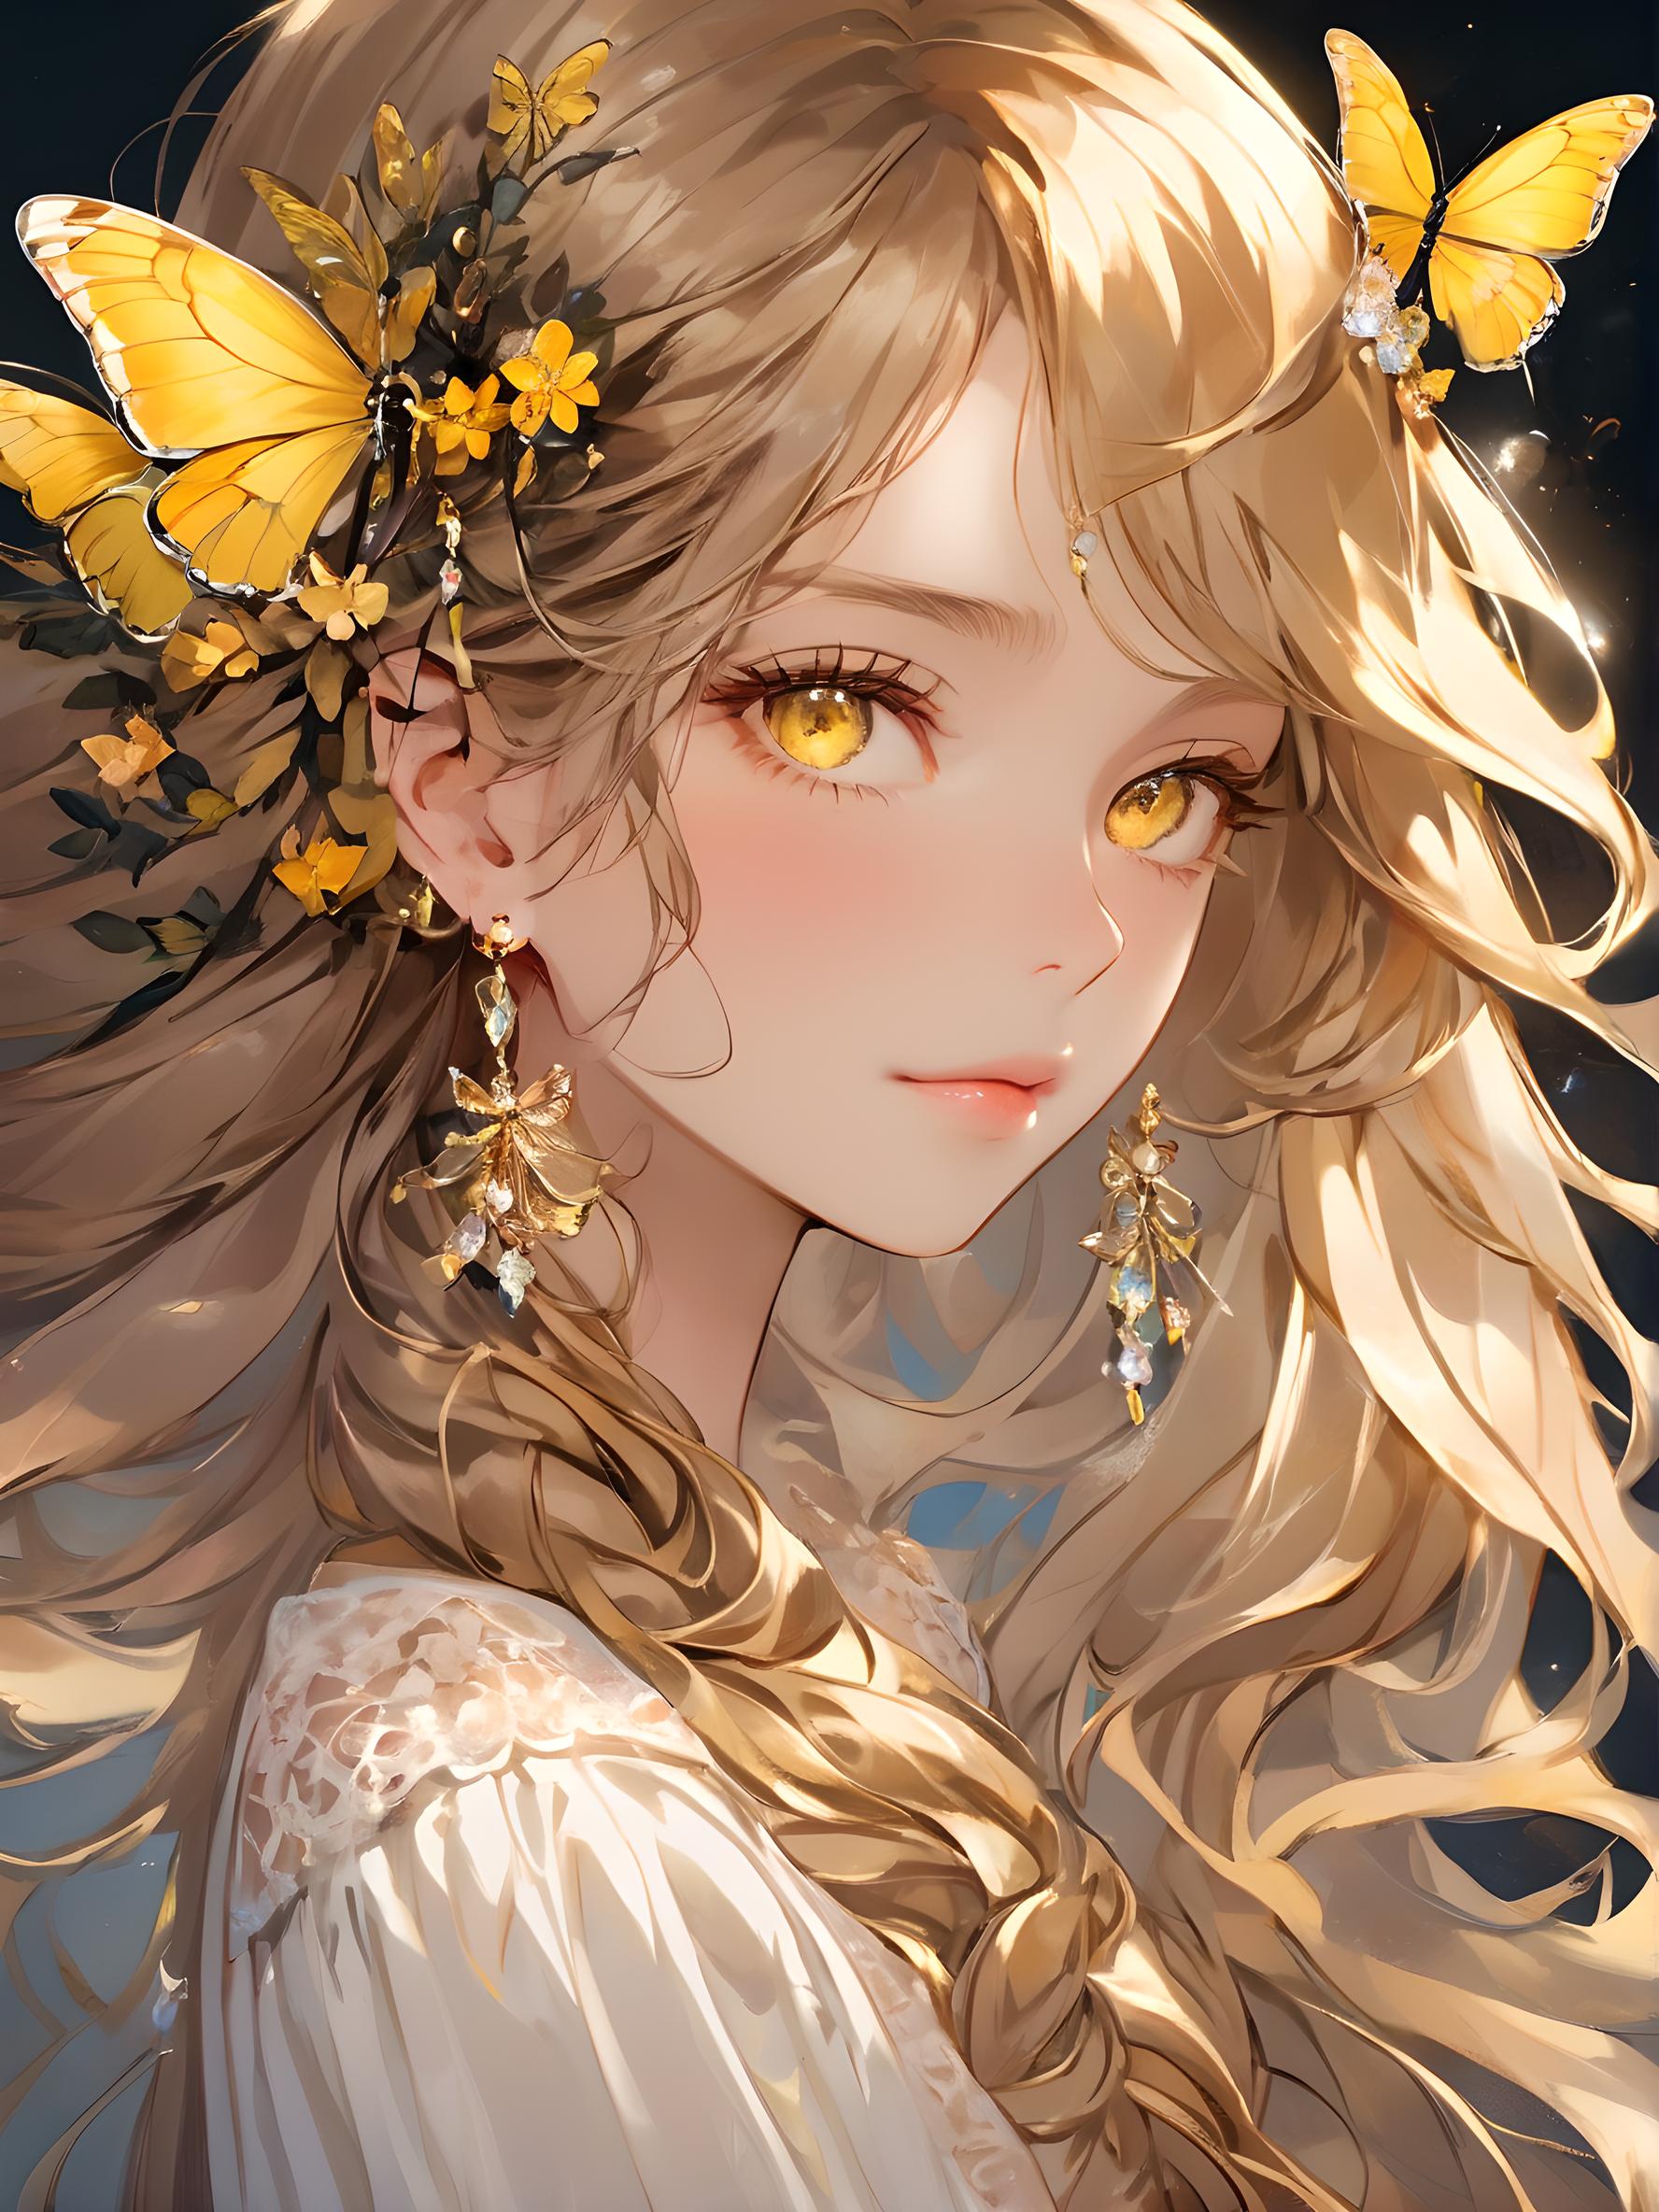 A golden butterfly